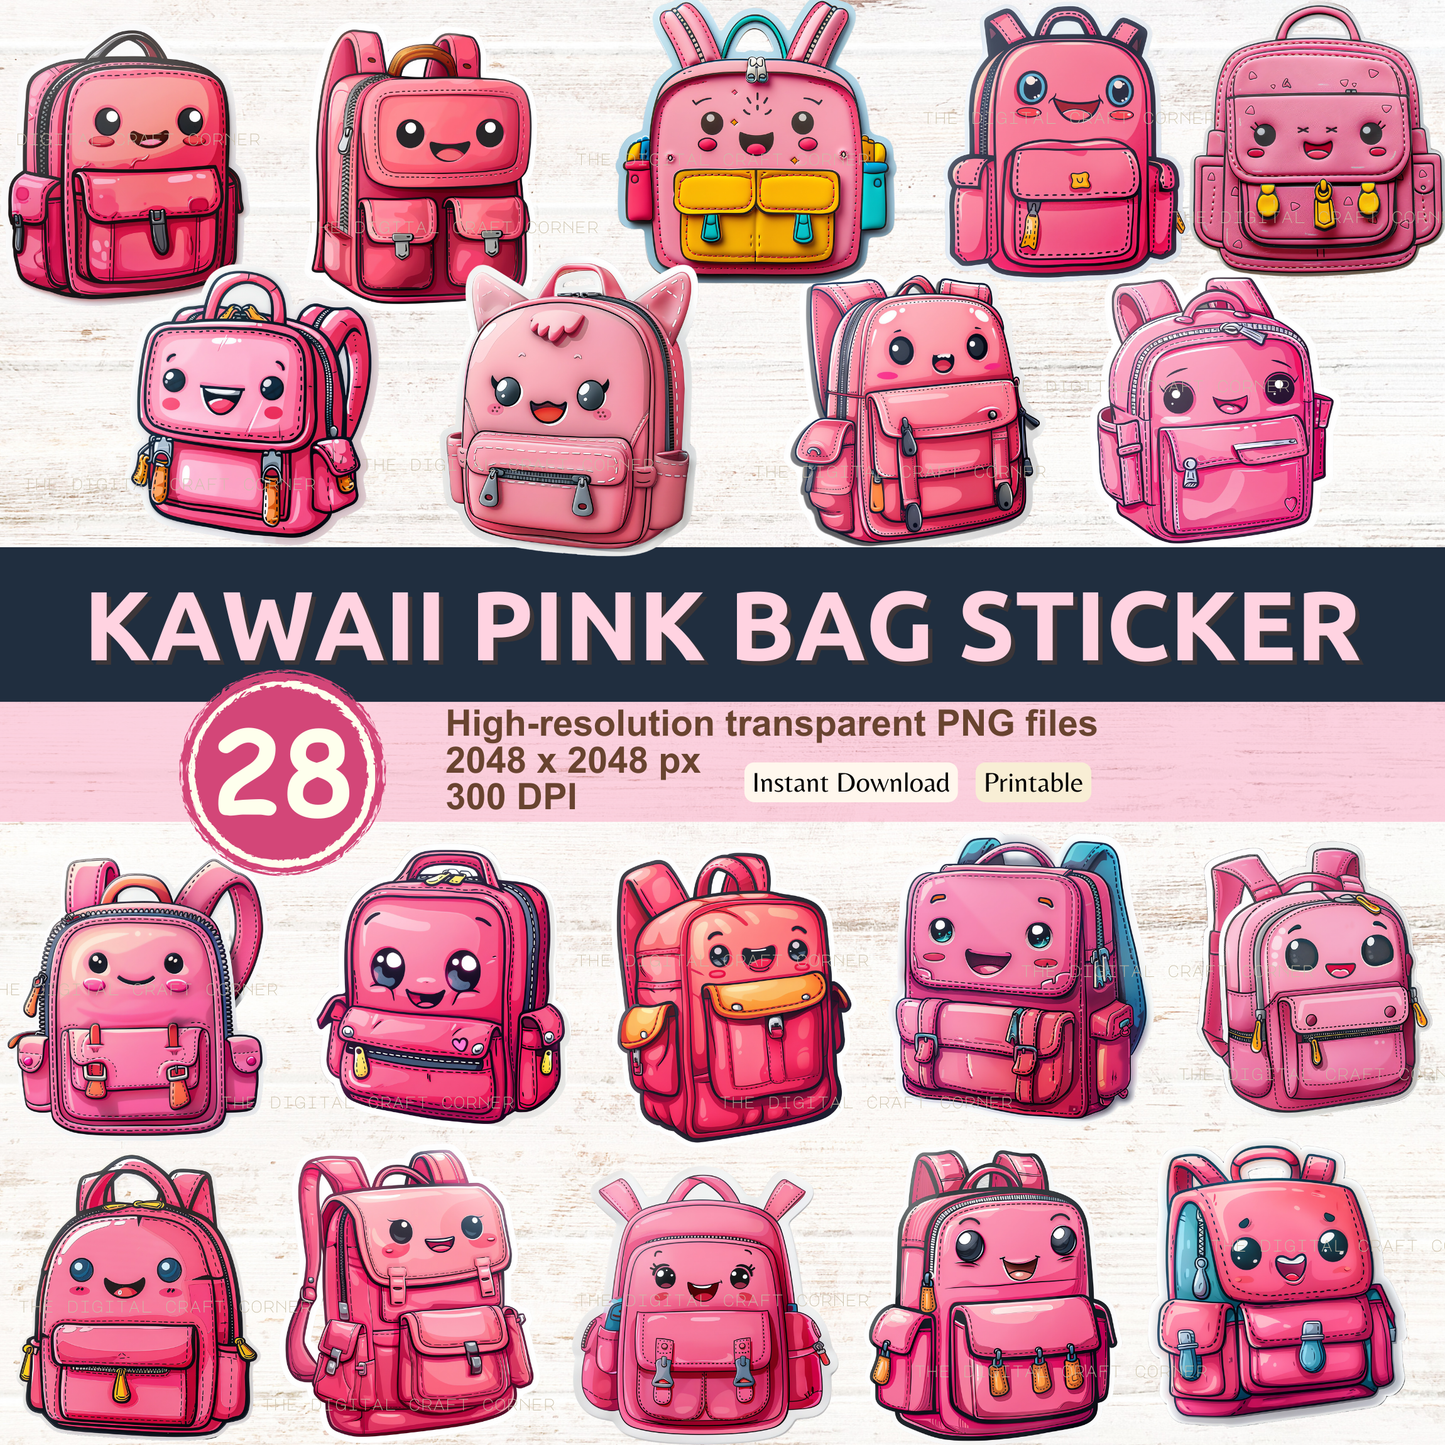 Kawaii Pink Bag Sticker